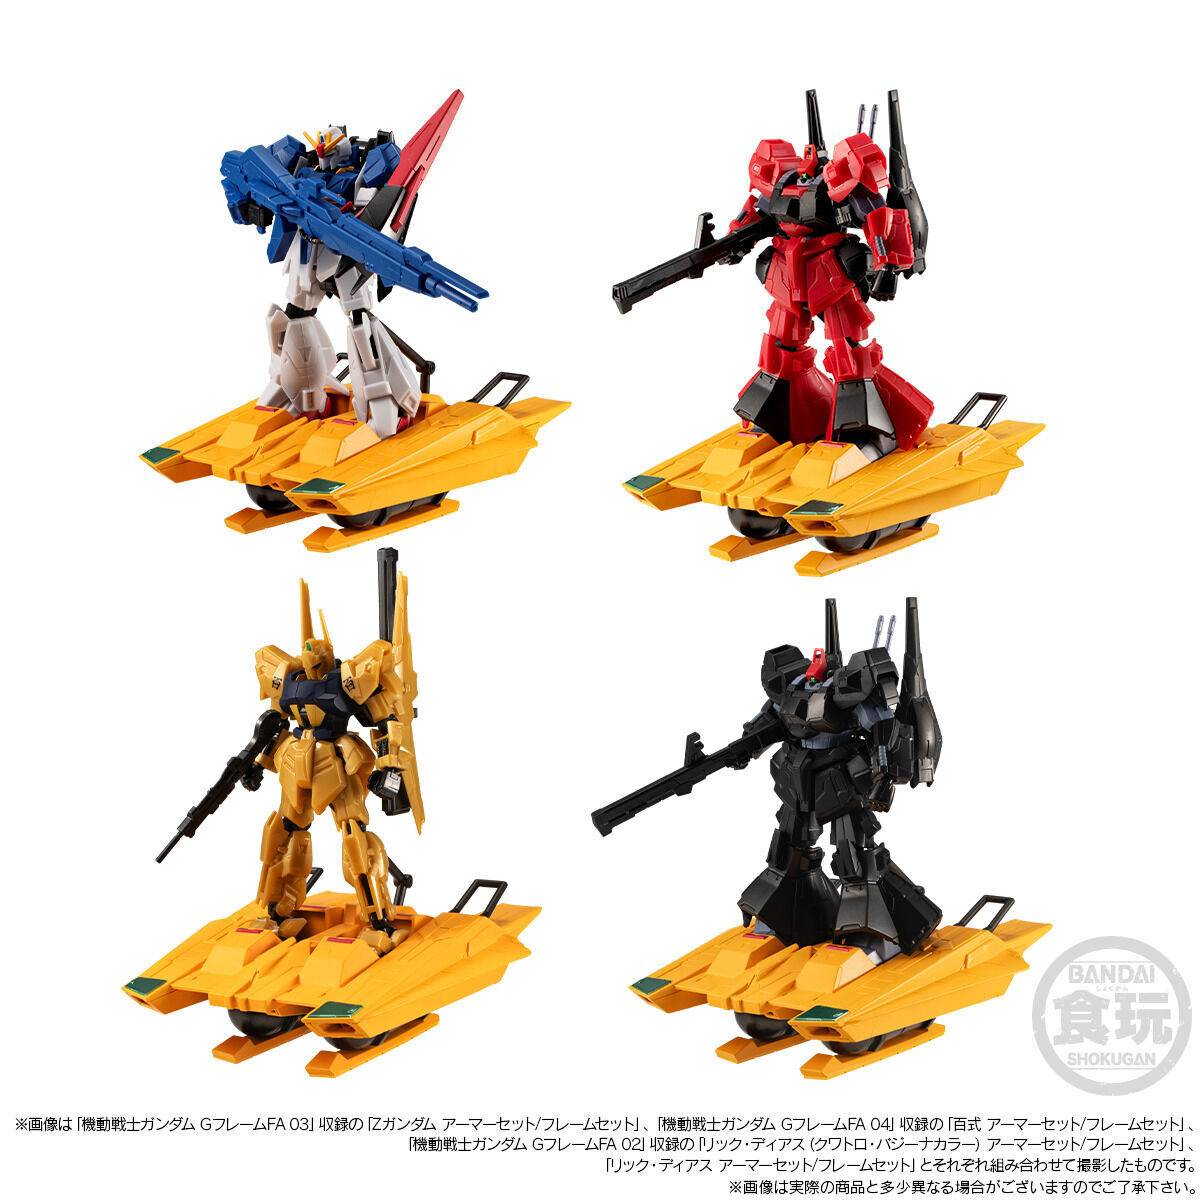 Bandai - Shokugan - Mobile Suit Zeta Gundam - G Frame FA FXA-05D G-Defenser &amp; Shackles Set - Marvelous Toys